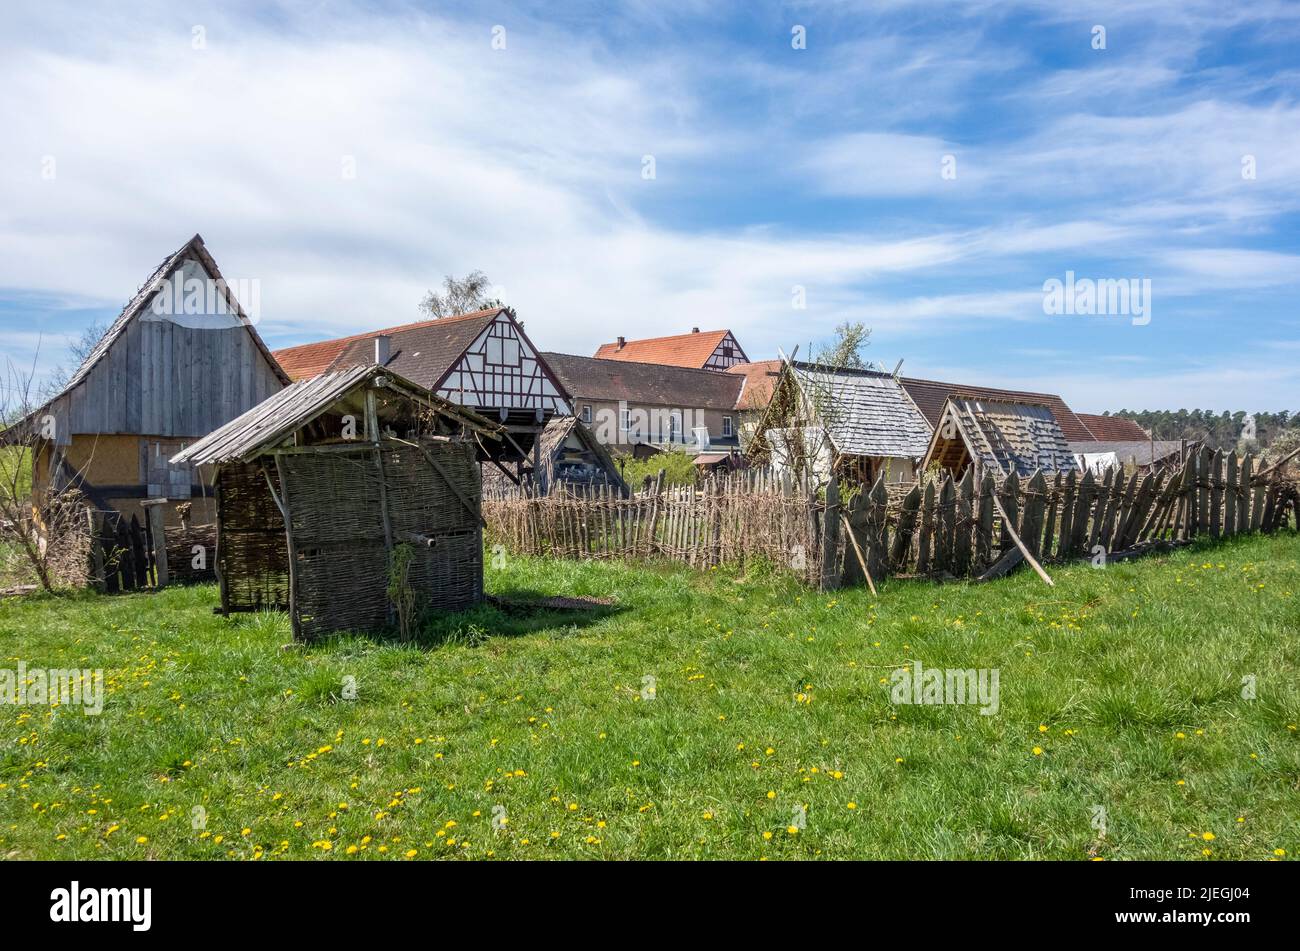 Paisaje de viviendas medievales en un ambiente soleado a principios de primavera Foto de stock